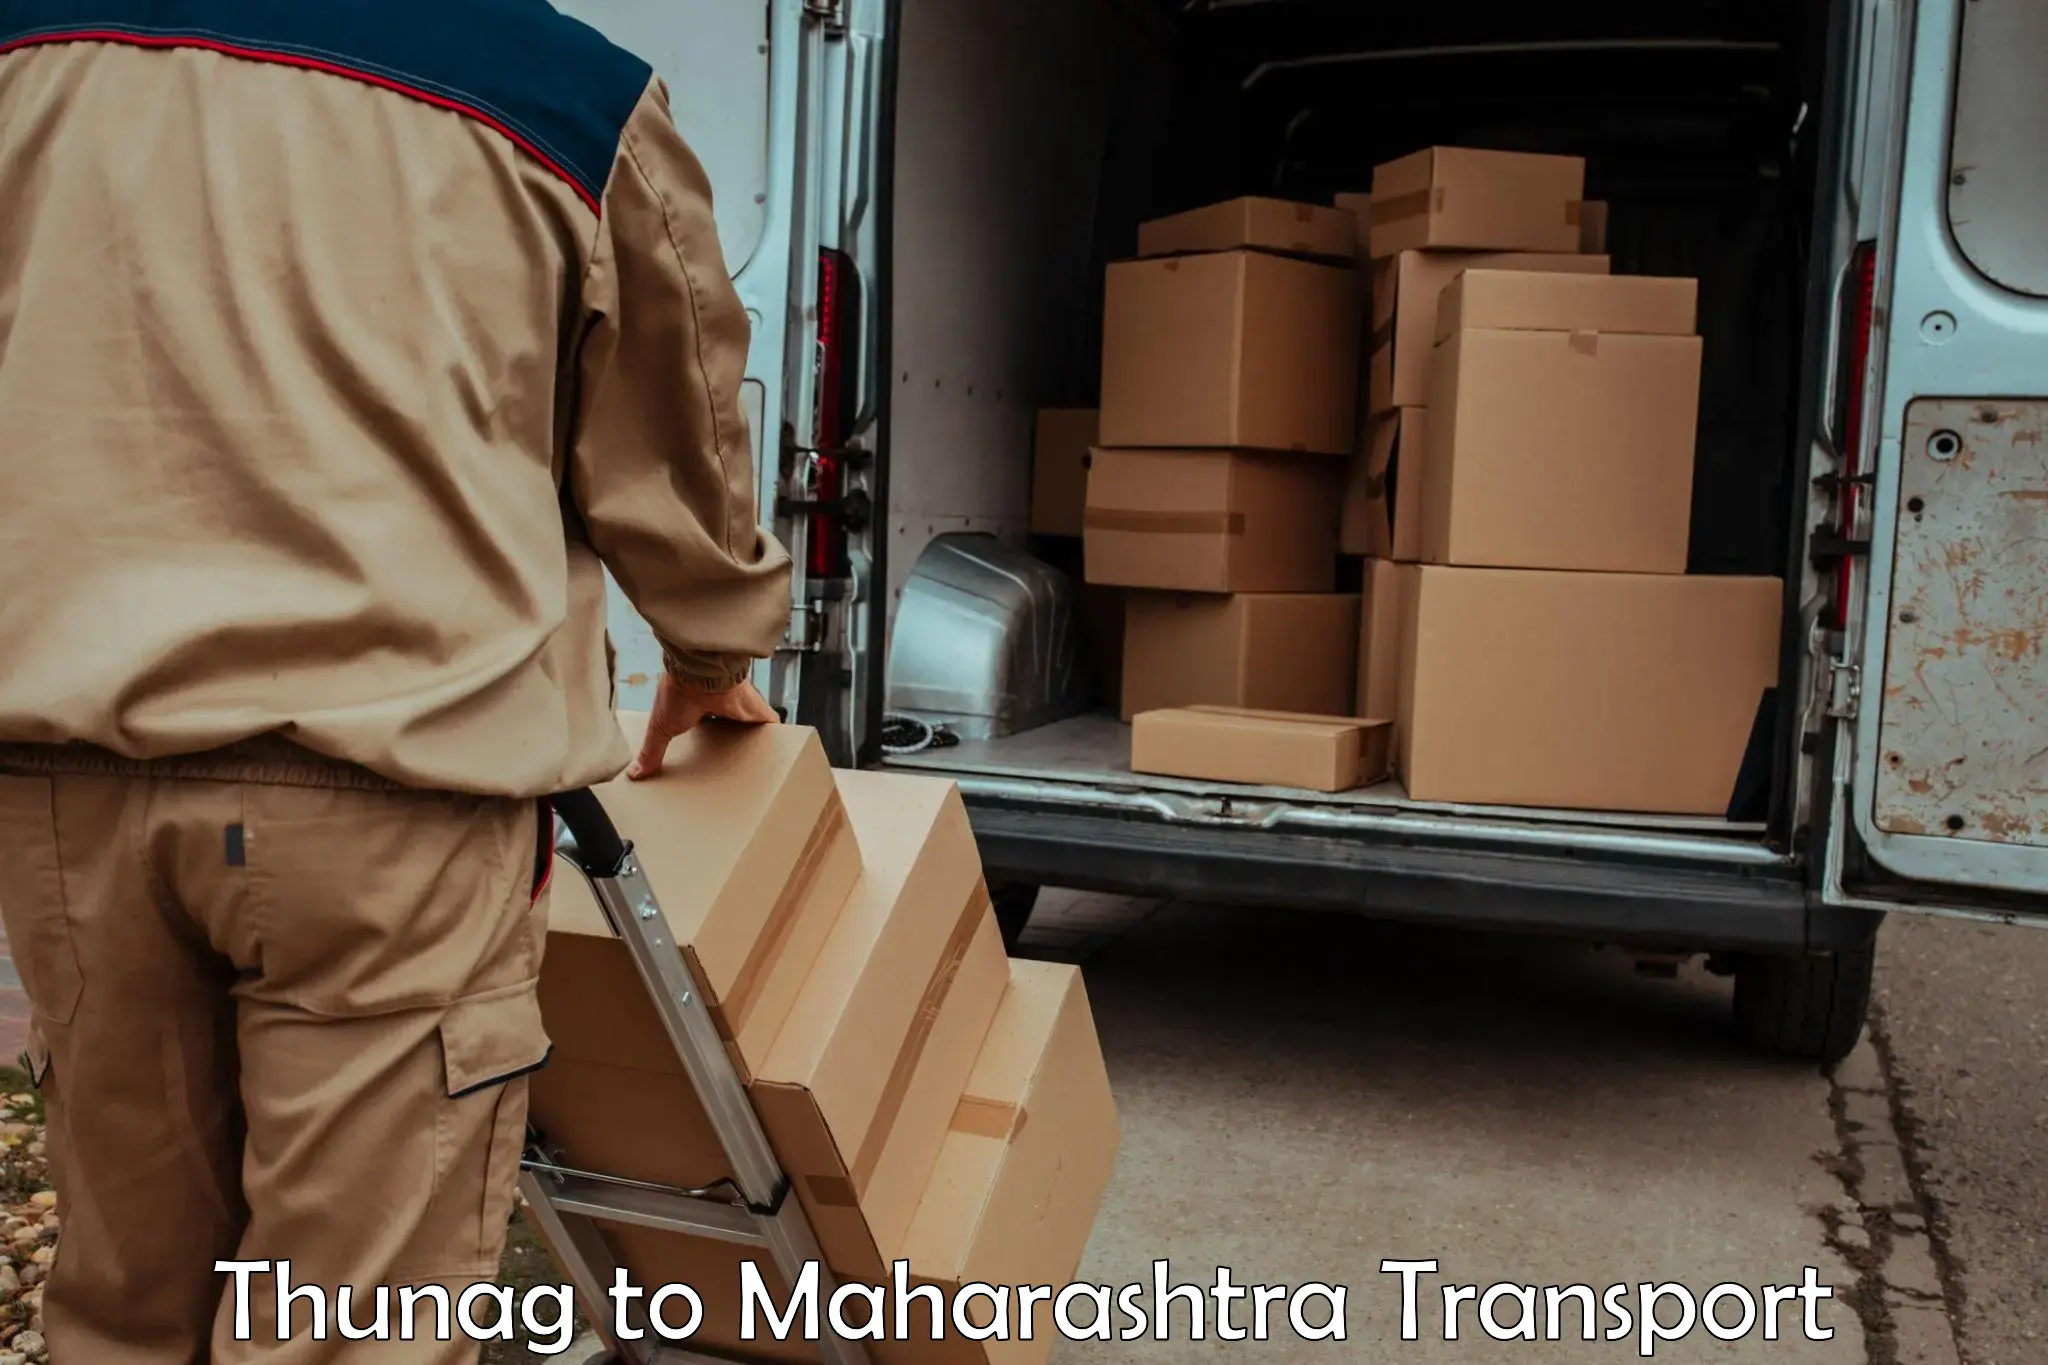 Transport shared services Thunag to Maharashtra